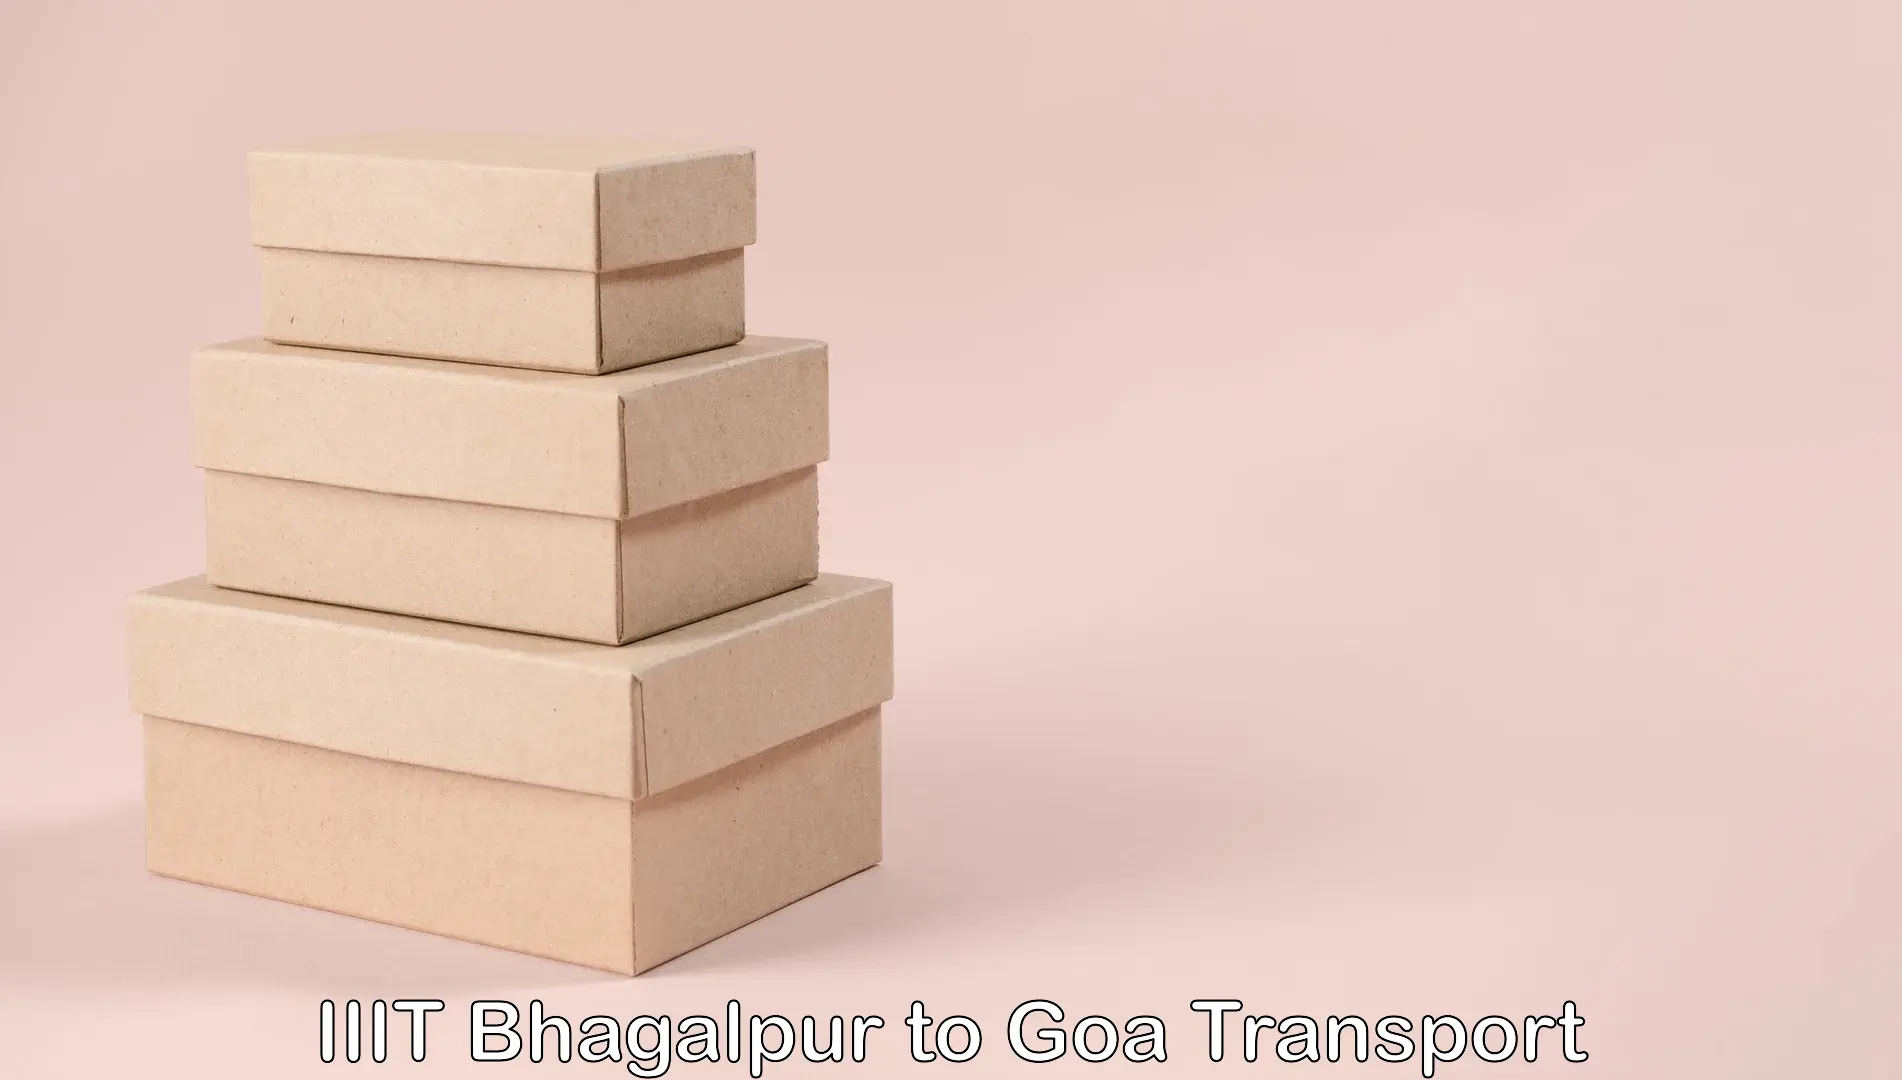 Cargo transport services in IIIT Bhagalpur to Bicholim